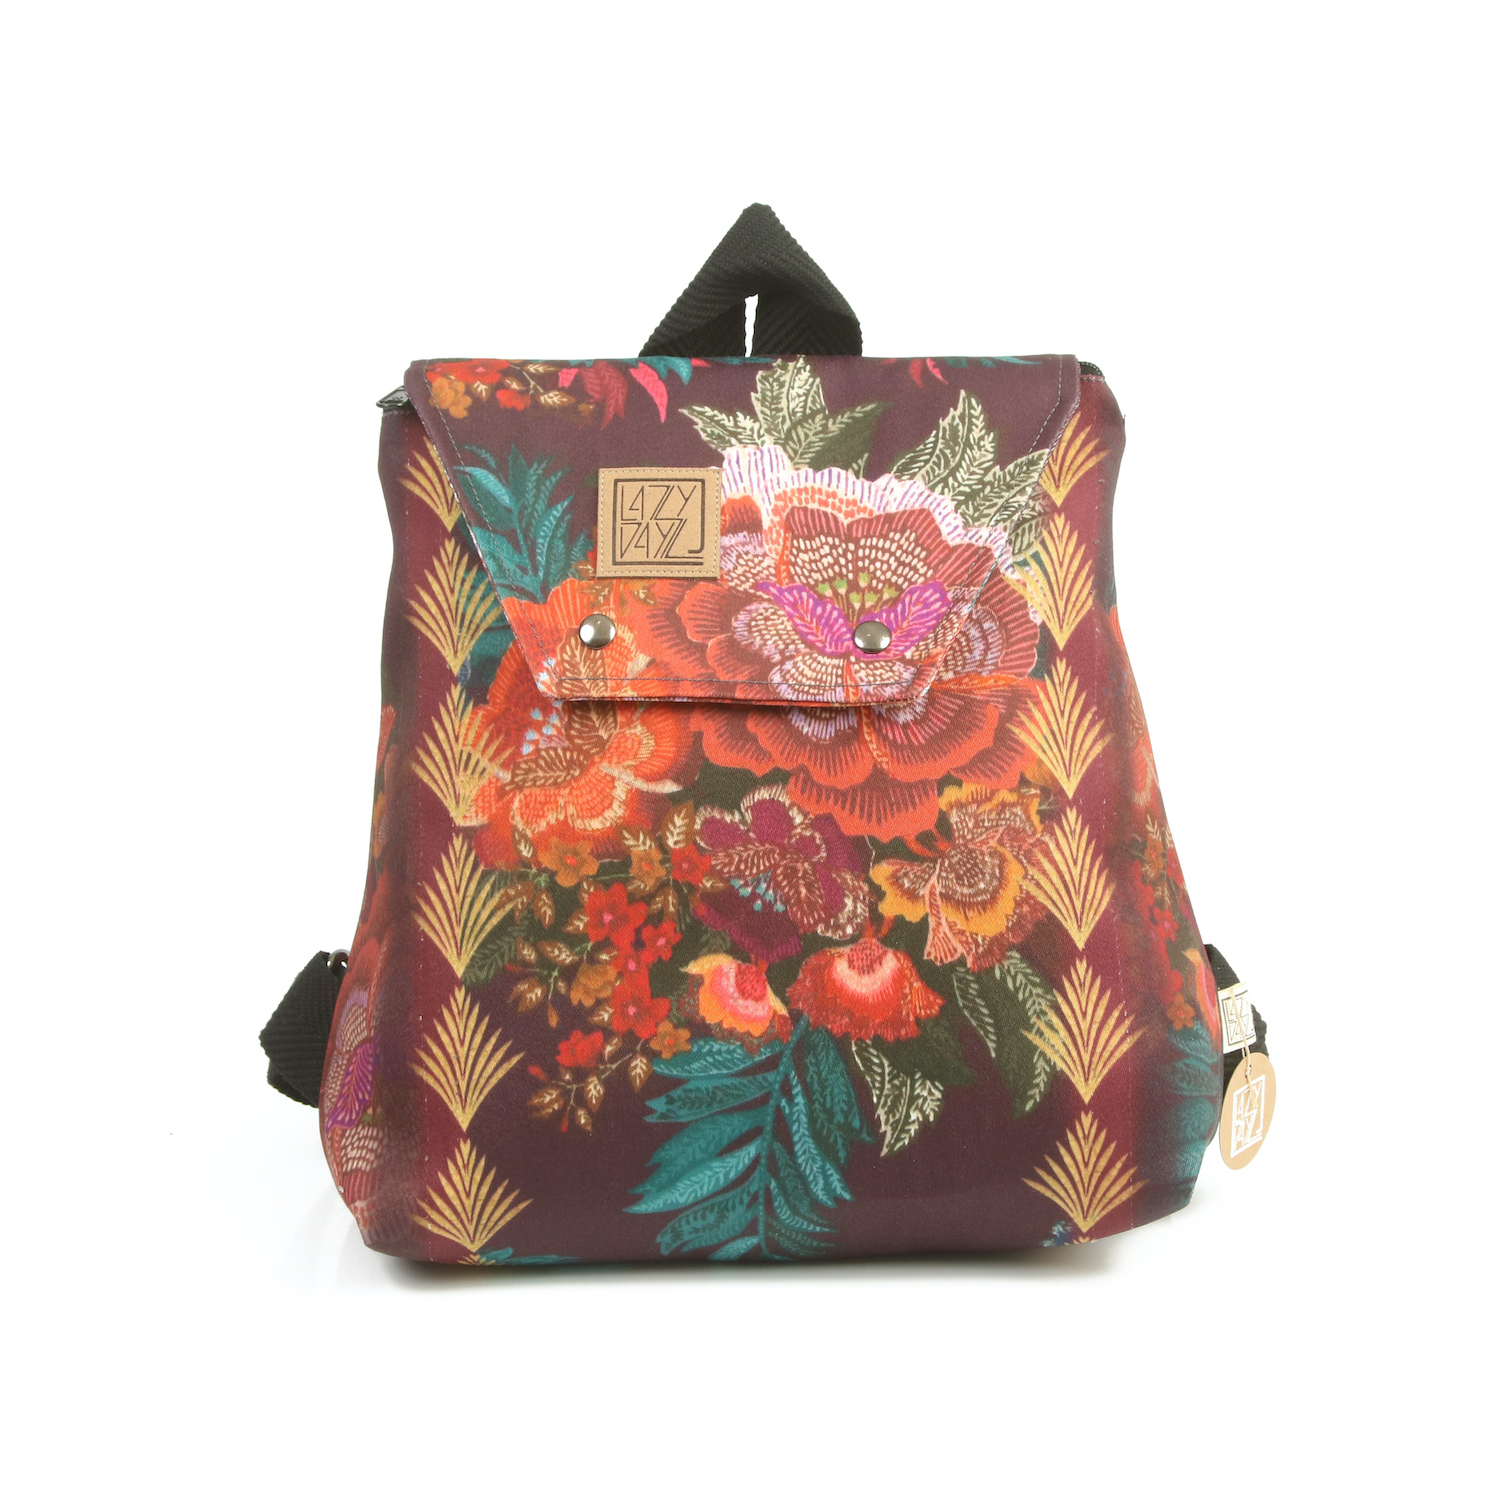 LazyDayz-Designs-Backpack-γυναικείος-σάκος-πλάτης-χειροποίητος bb0303